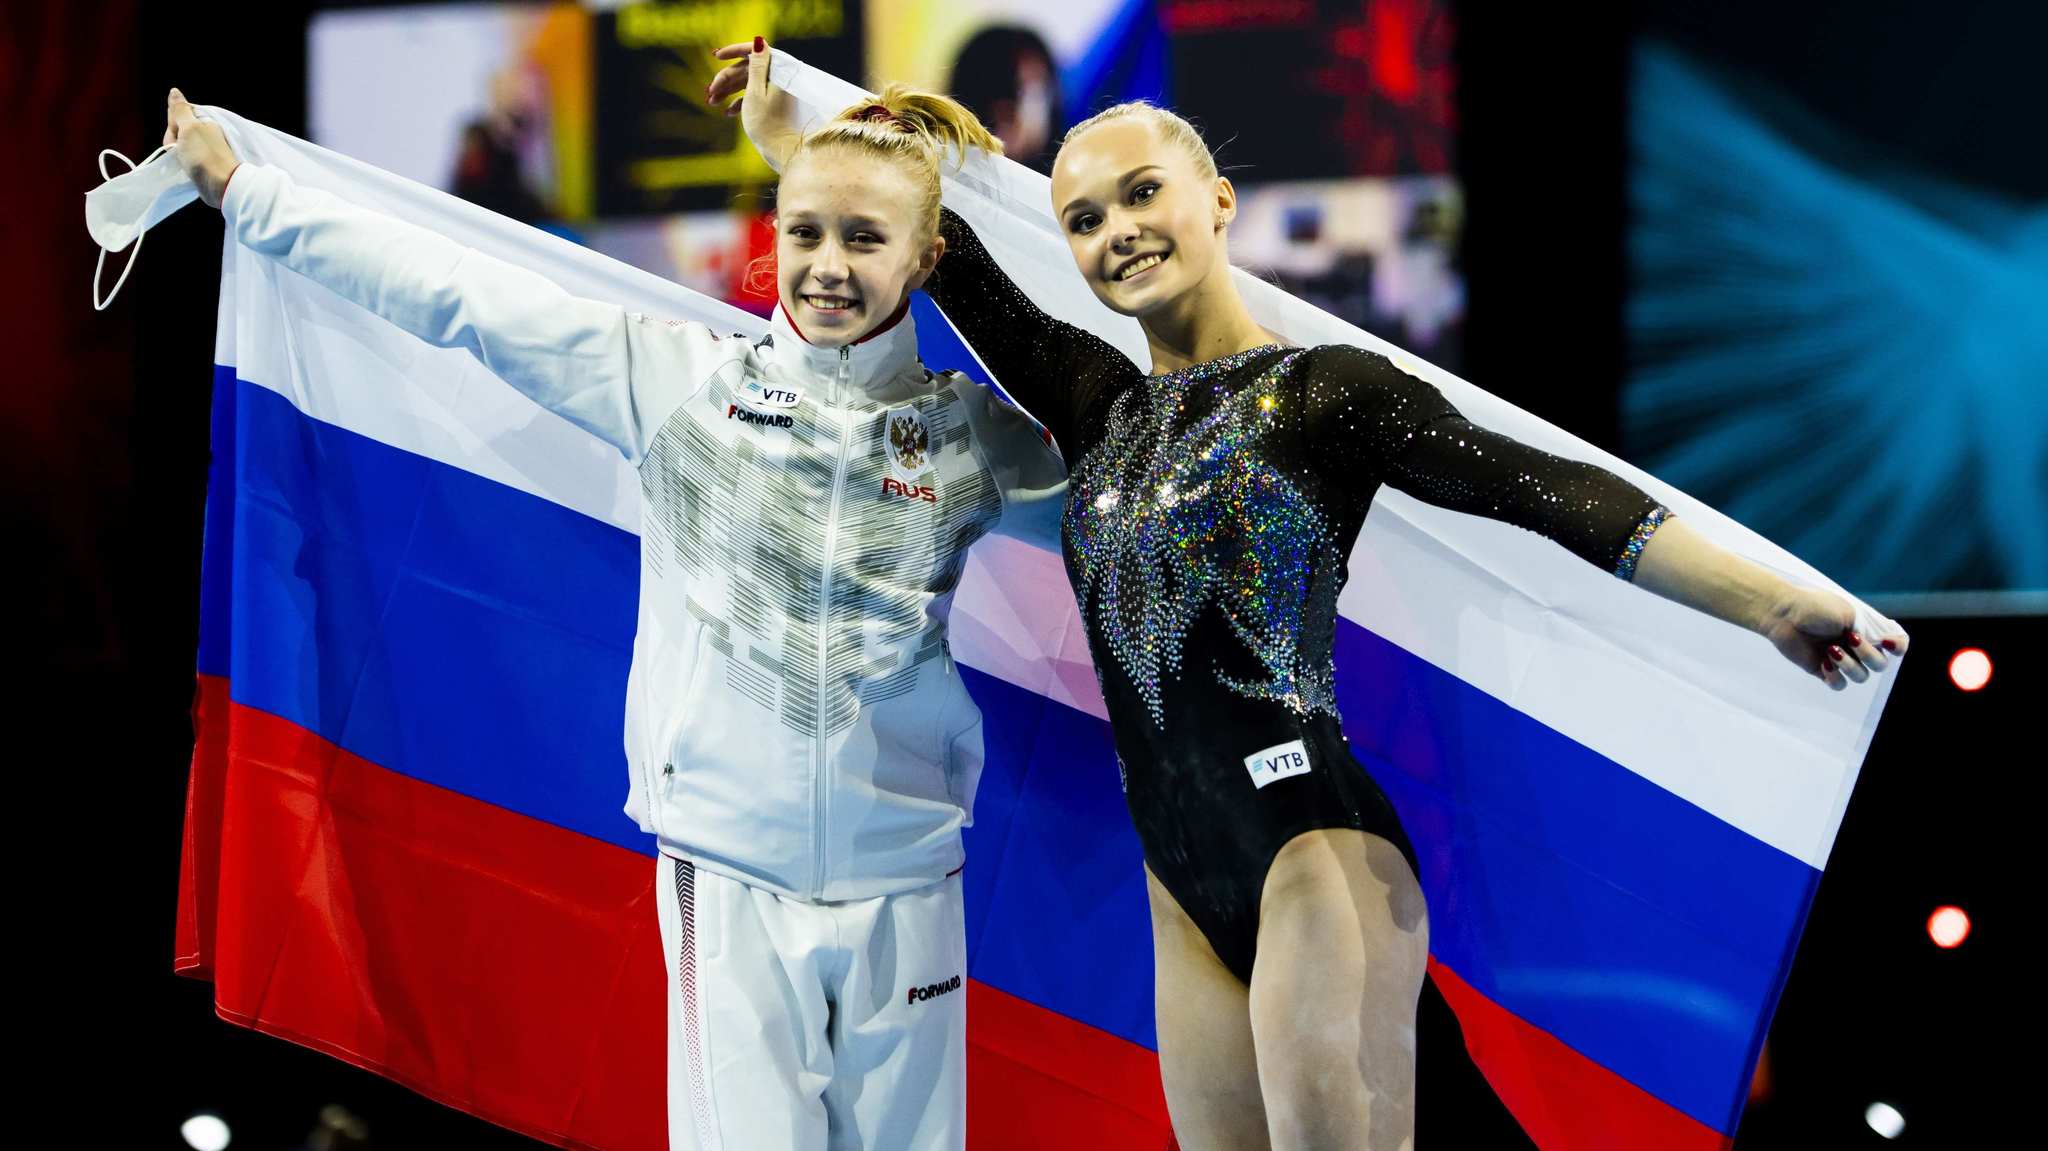 La rusa Listunova, campeona de Europa con 15 años